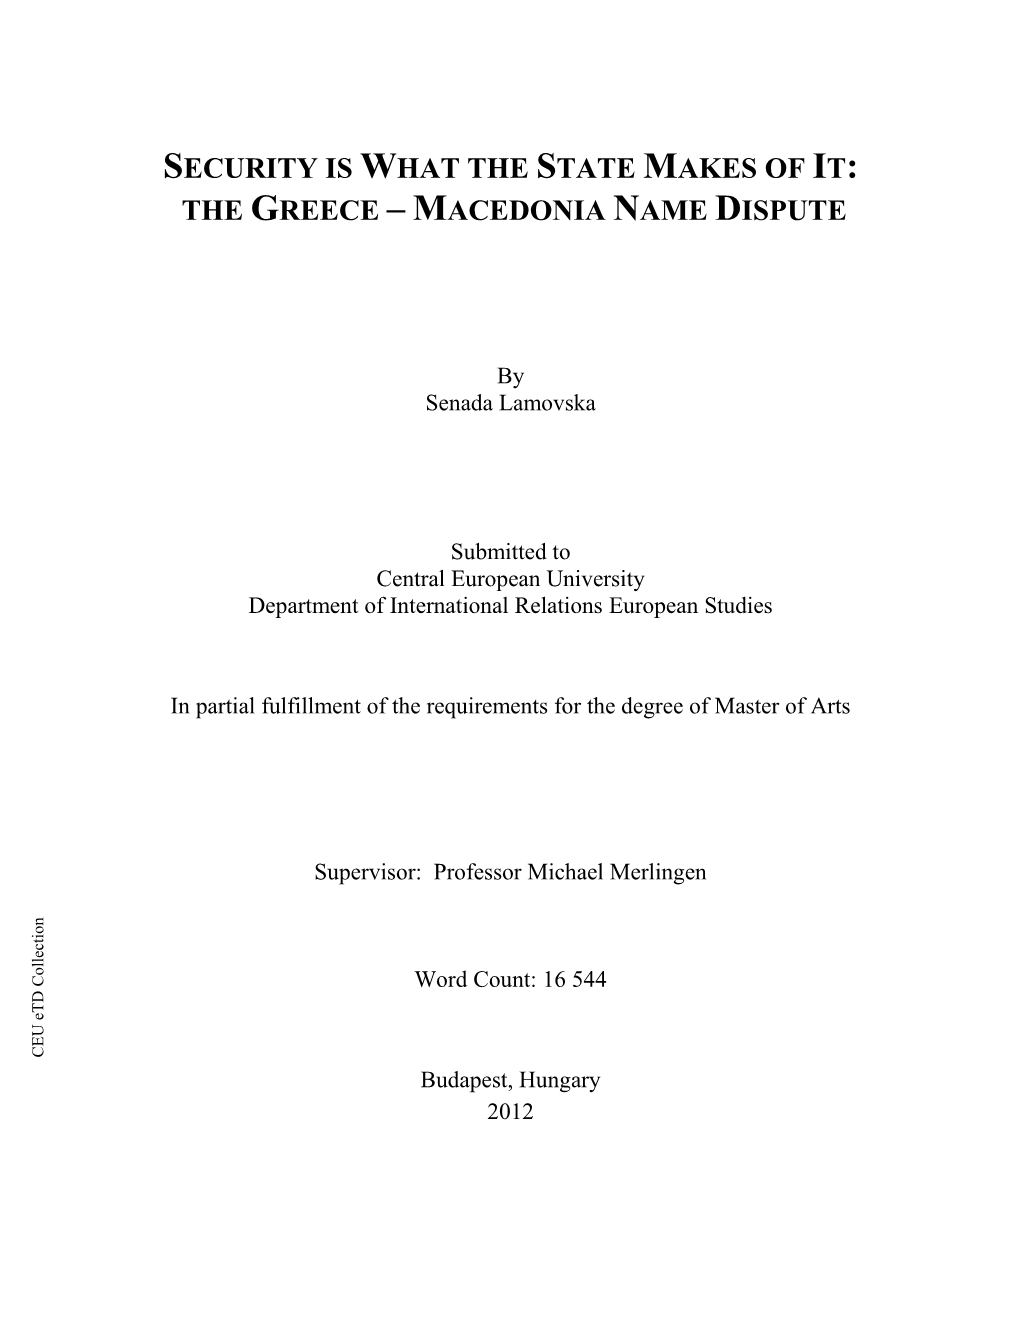 The Greece – Macedonia Name Dispute